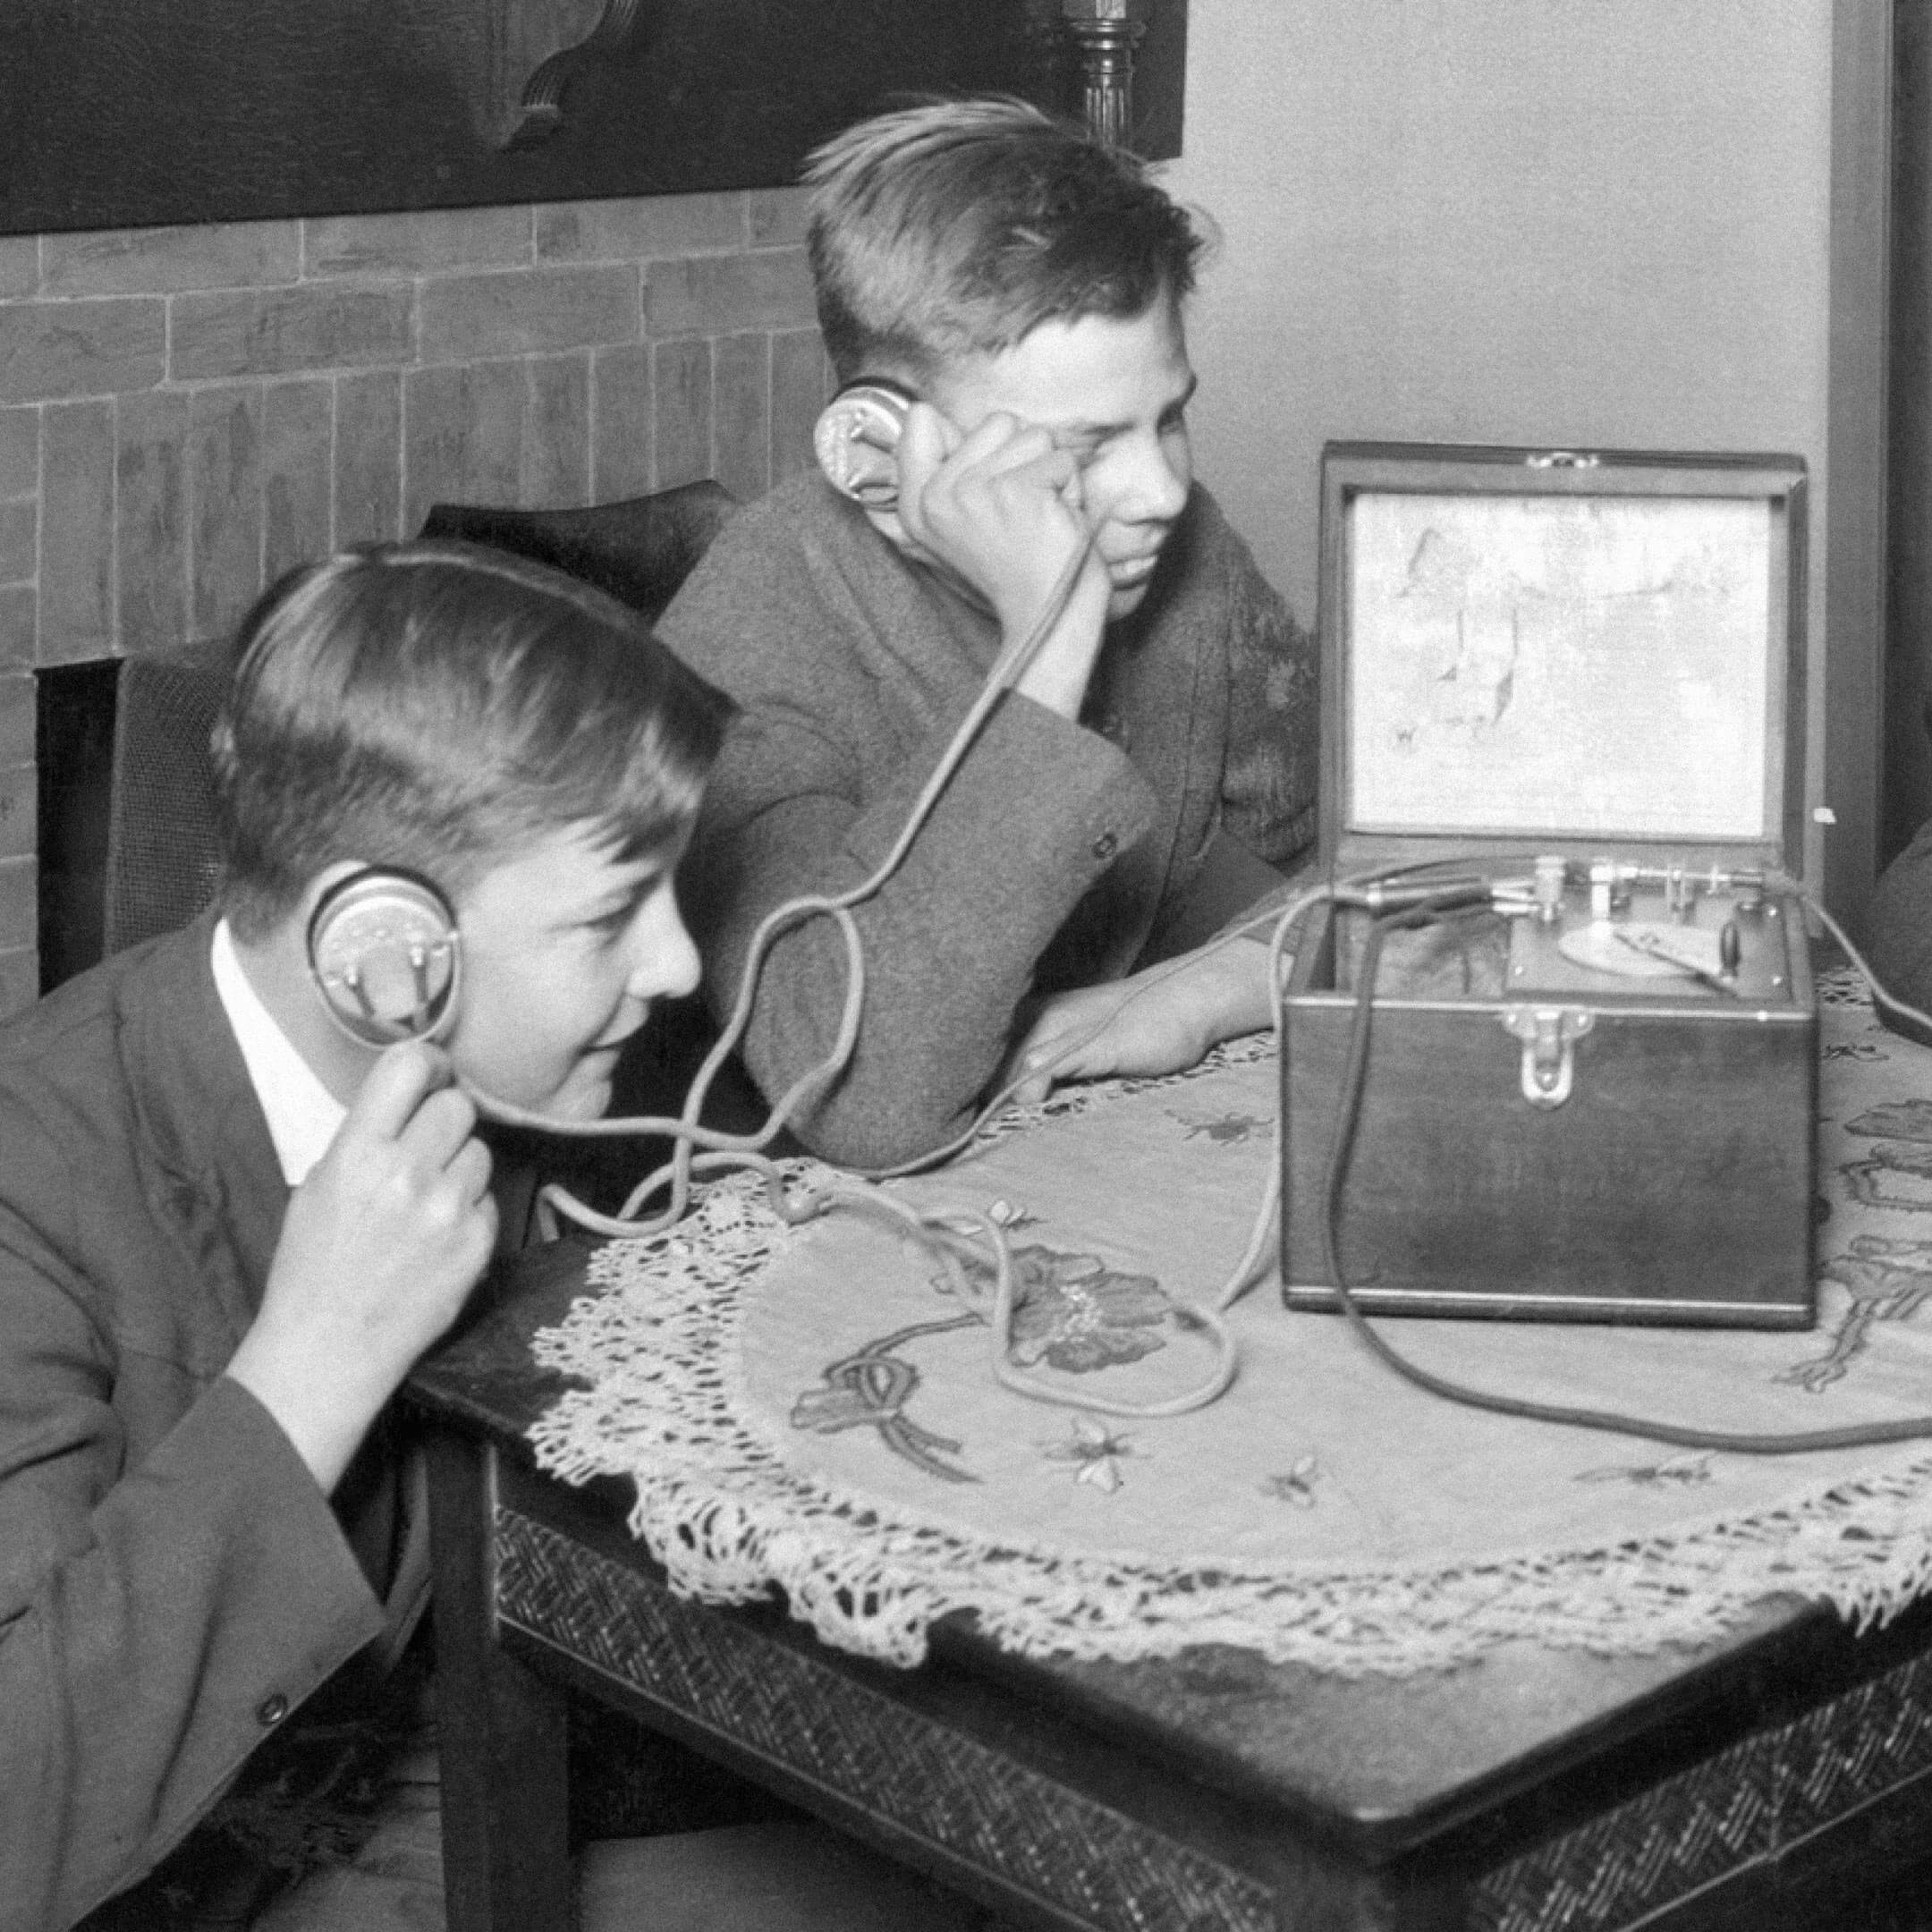 Дети слушают радио в наушниках (1920-е). Источник: insdrcdn.com